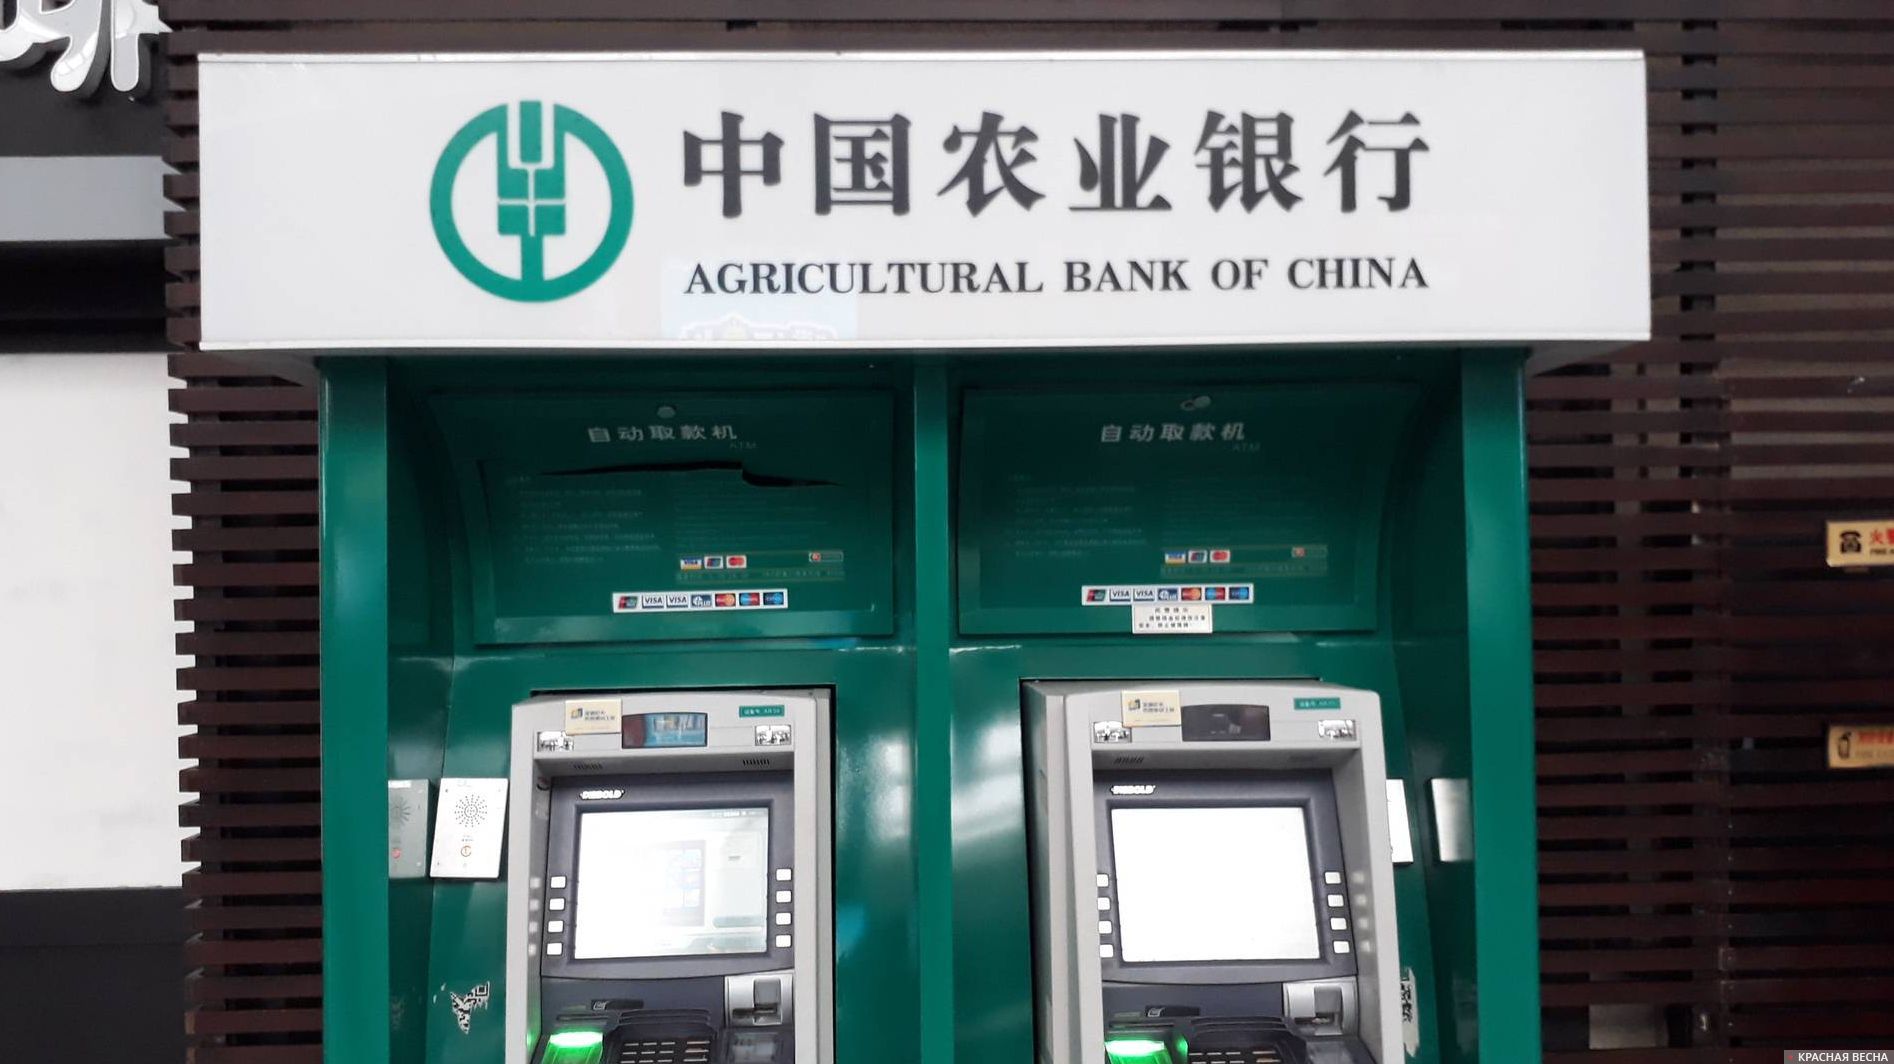 Chouzhou commercial bank co ltd. Китайский банк. Сельскохозяйственный банк Китая. Народный банк Китая. Китайский сельскохозяйственный банк (Agricultural Bank of China Limited).